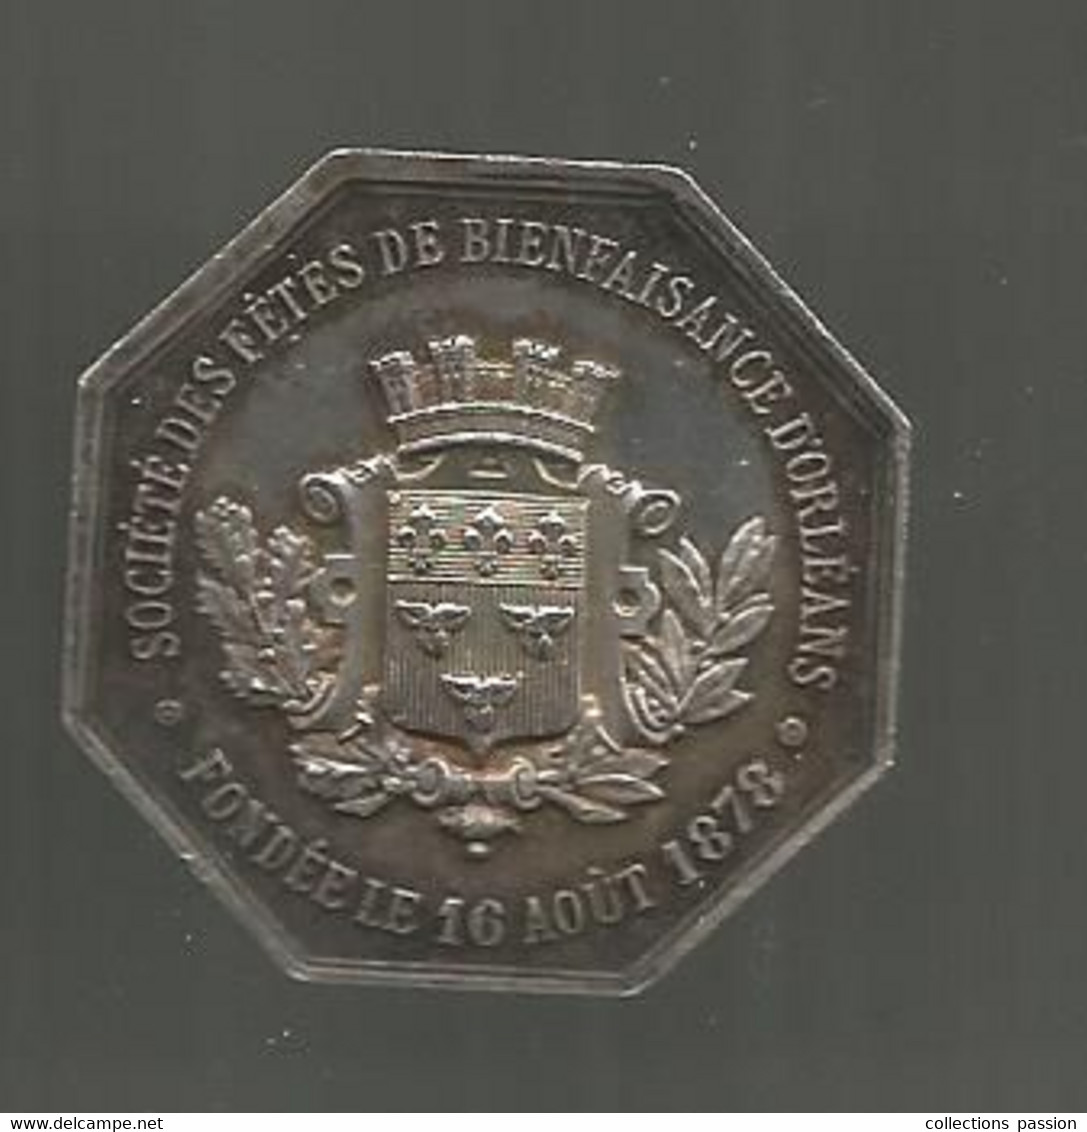 Jeton Argent, Société Des Fêtes De Bienfaisance D'ORLEANS Fondée Le 16 Août 1878, 2 Scans, 33 X 33 Mm - Profesionales / De Sociedad